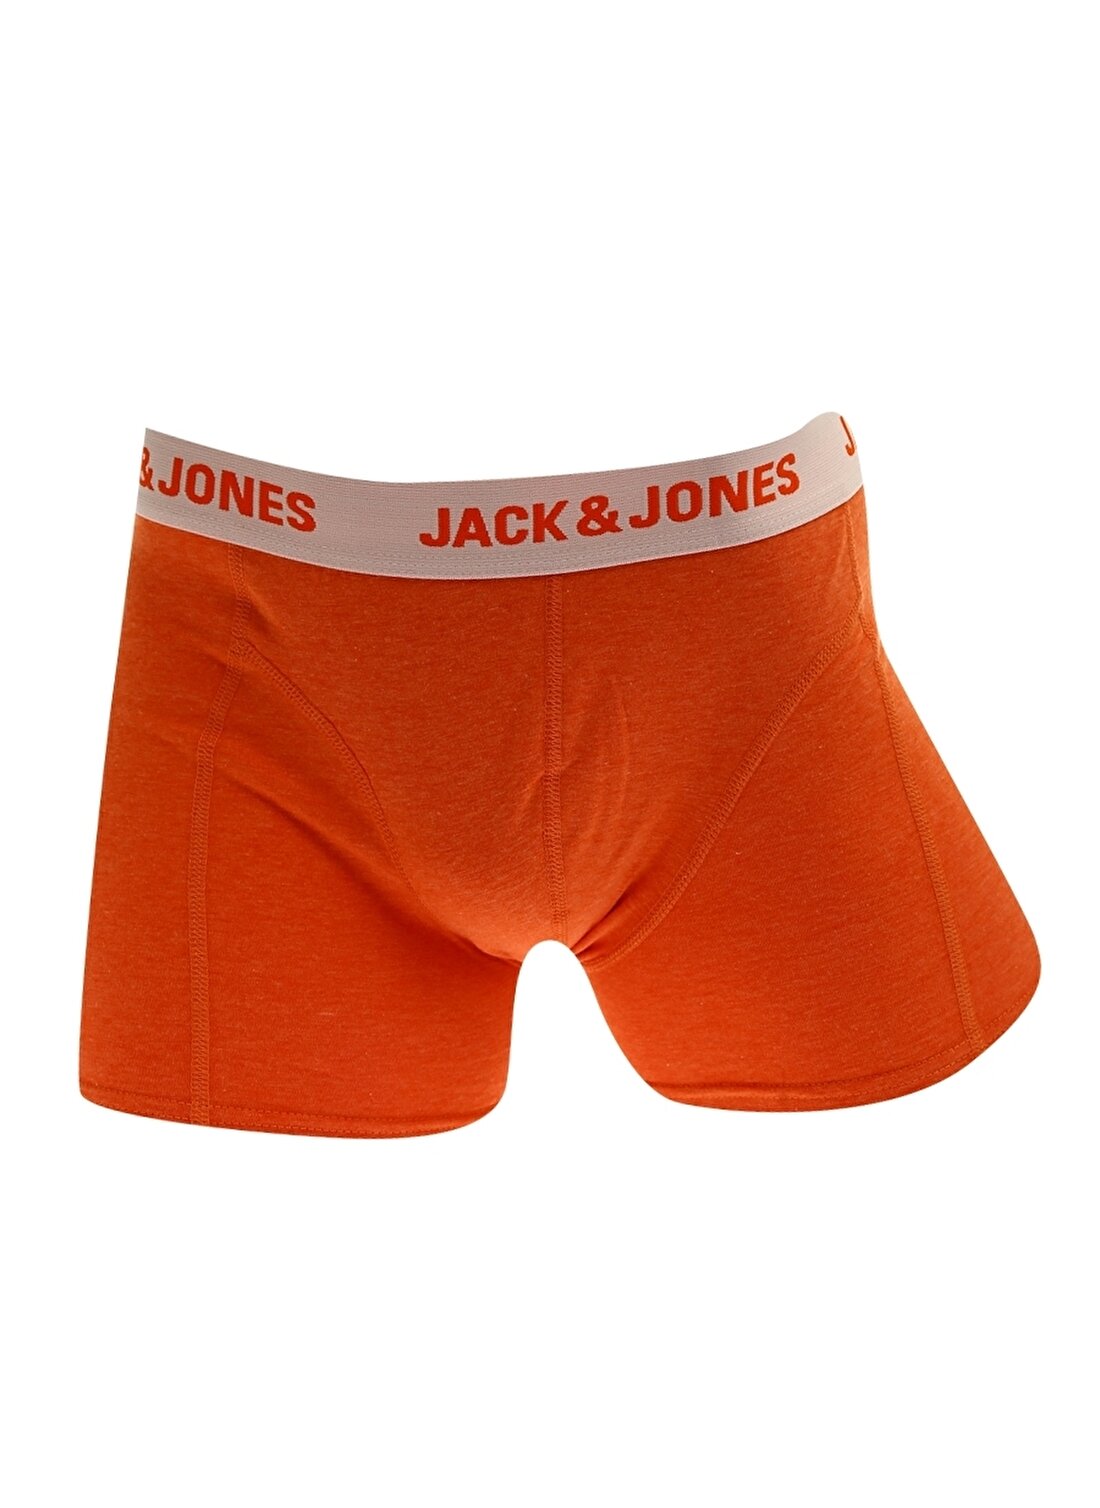 Jack & Jones Acground Boxer